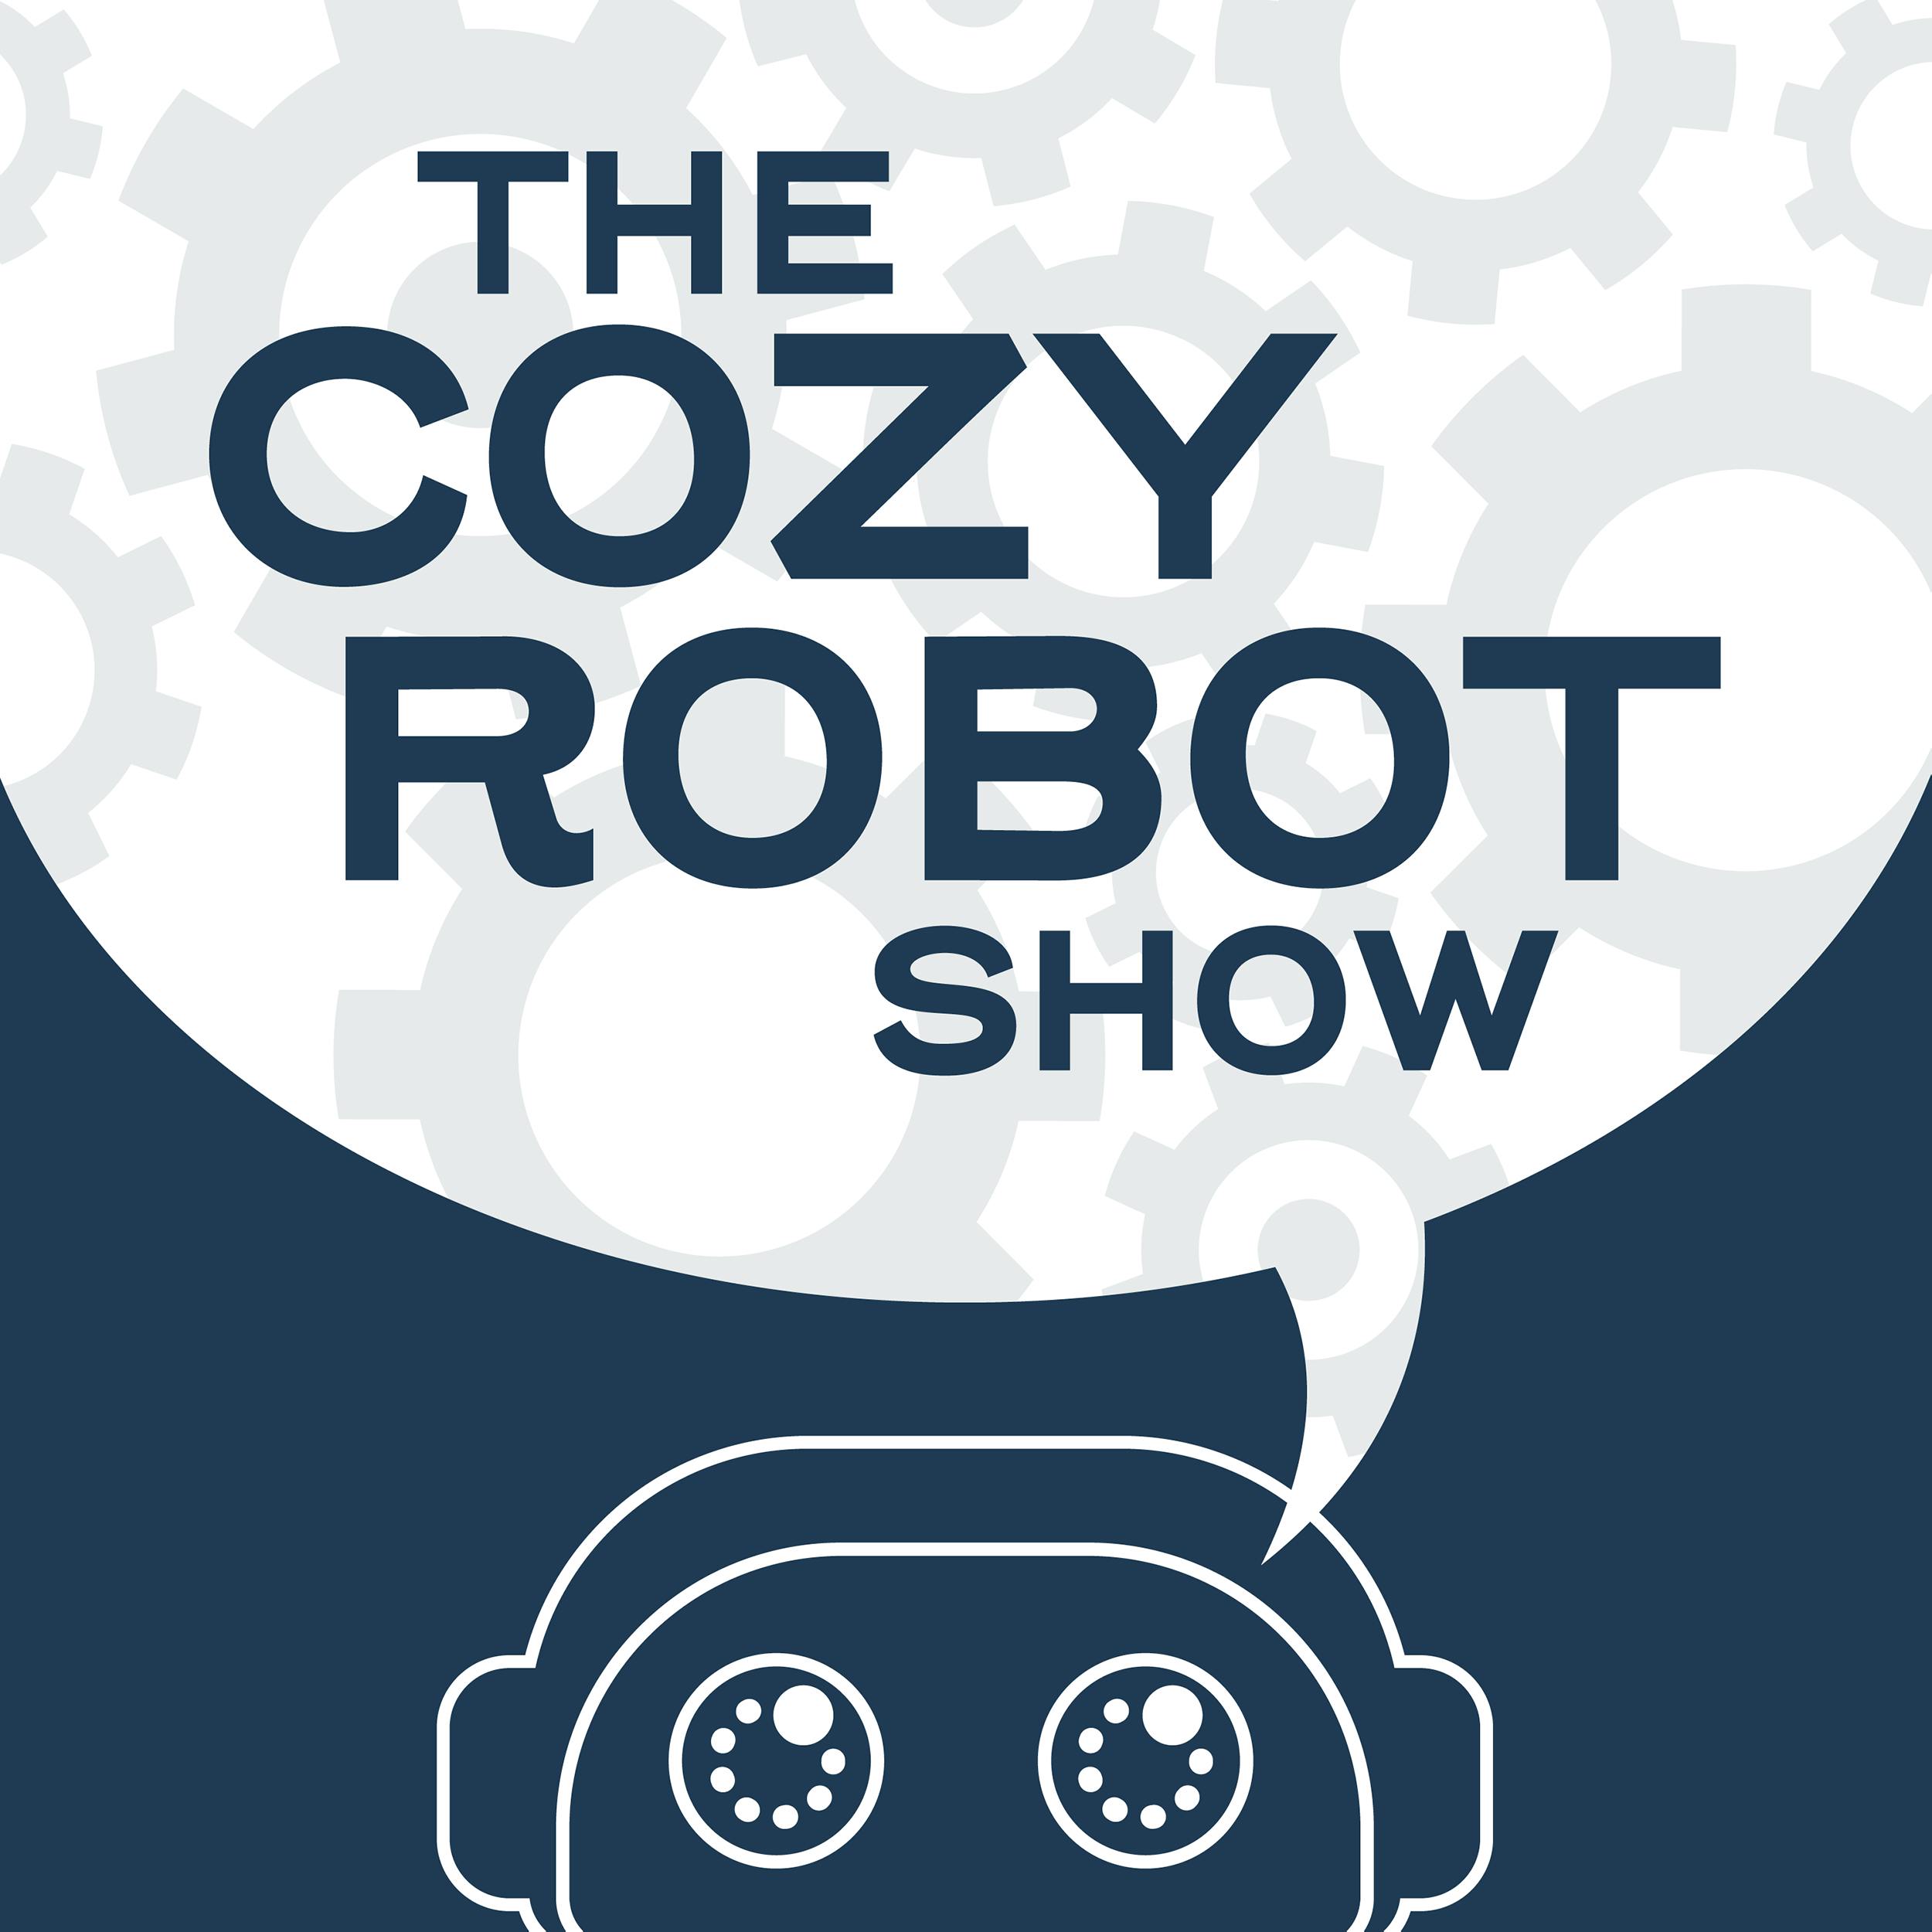 Cozy Robot Show: Let’s Get LIT (erary)!